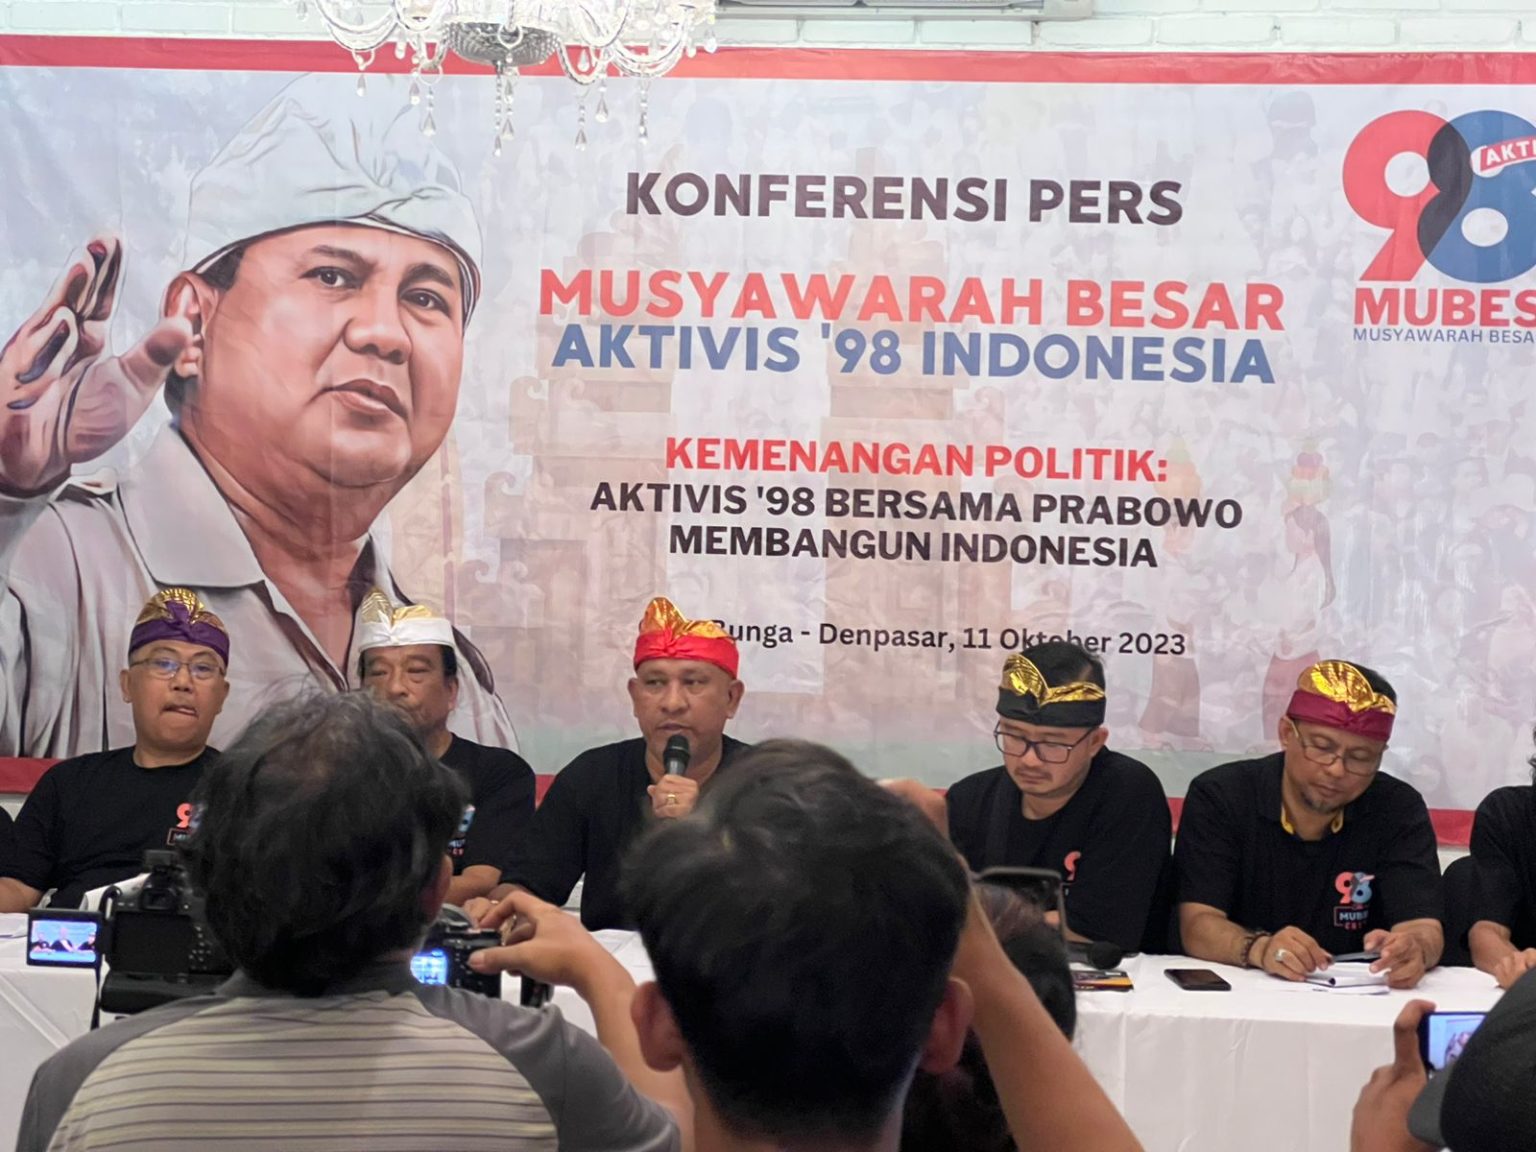 Eksponen aktivis 98 melaksanakan Musyawarah Besar (Mubes) Aktivis 98 di Denpasar, Bali.